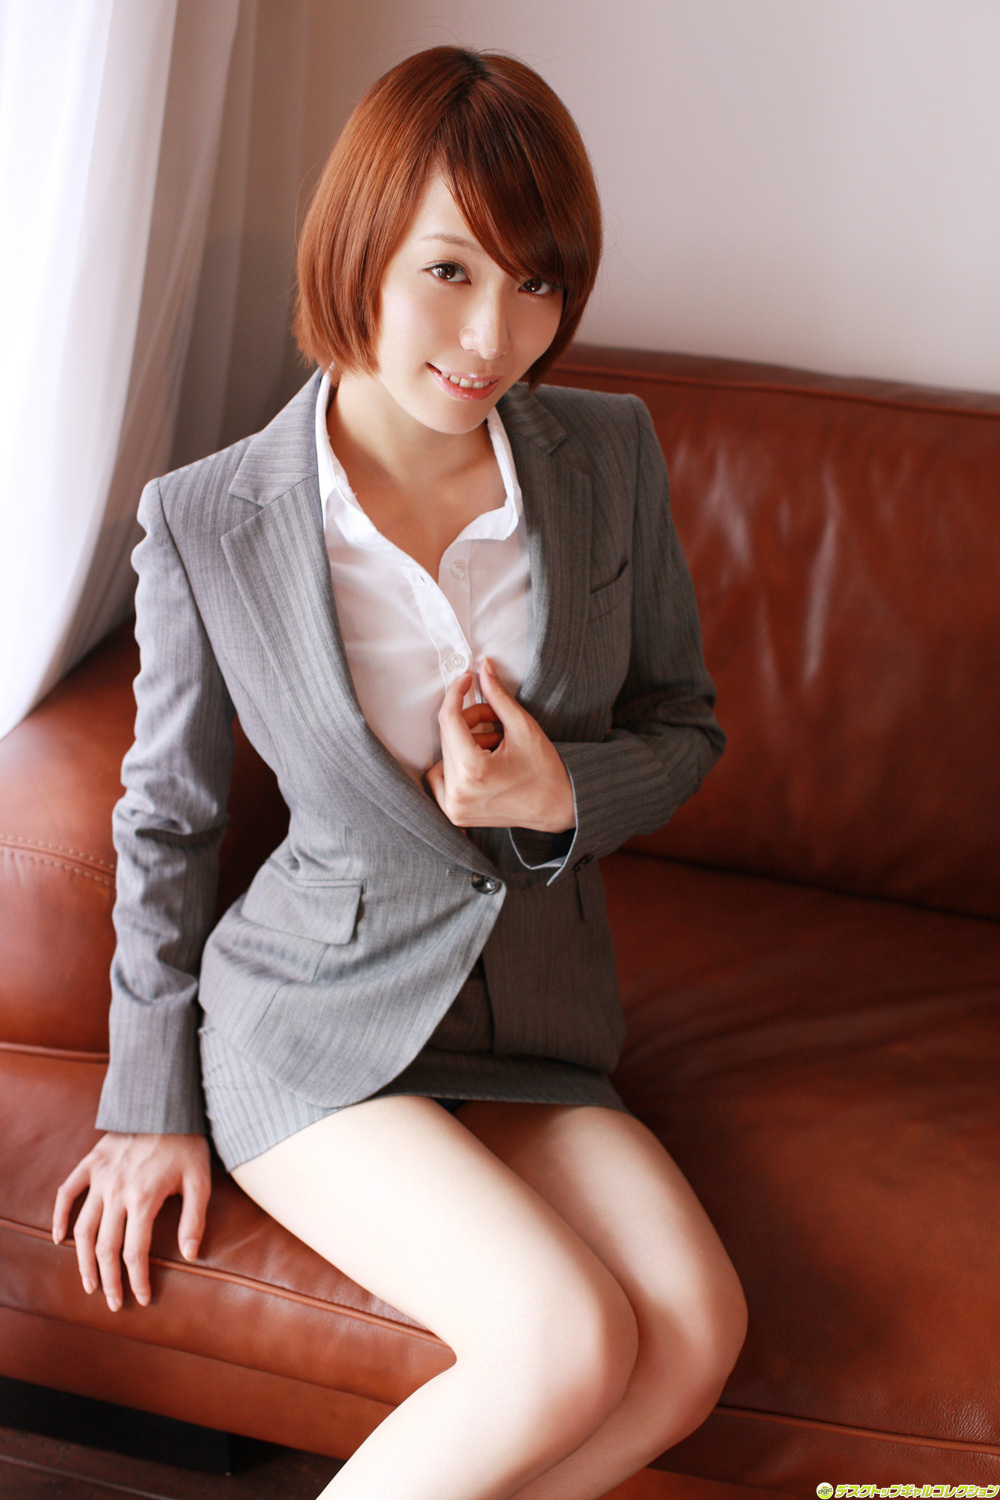 [DGC] no.1054 eroka Tsunashima Japanese actress sexy pictures